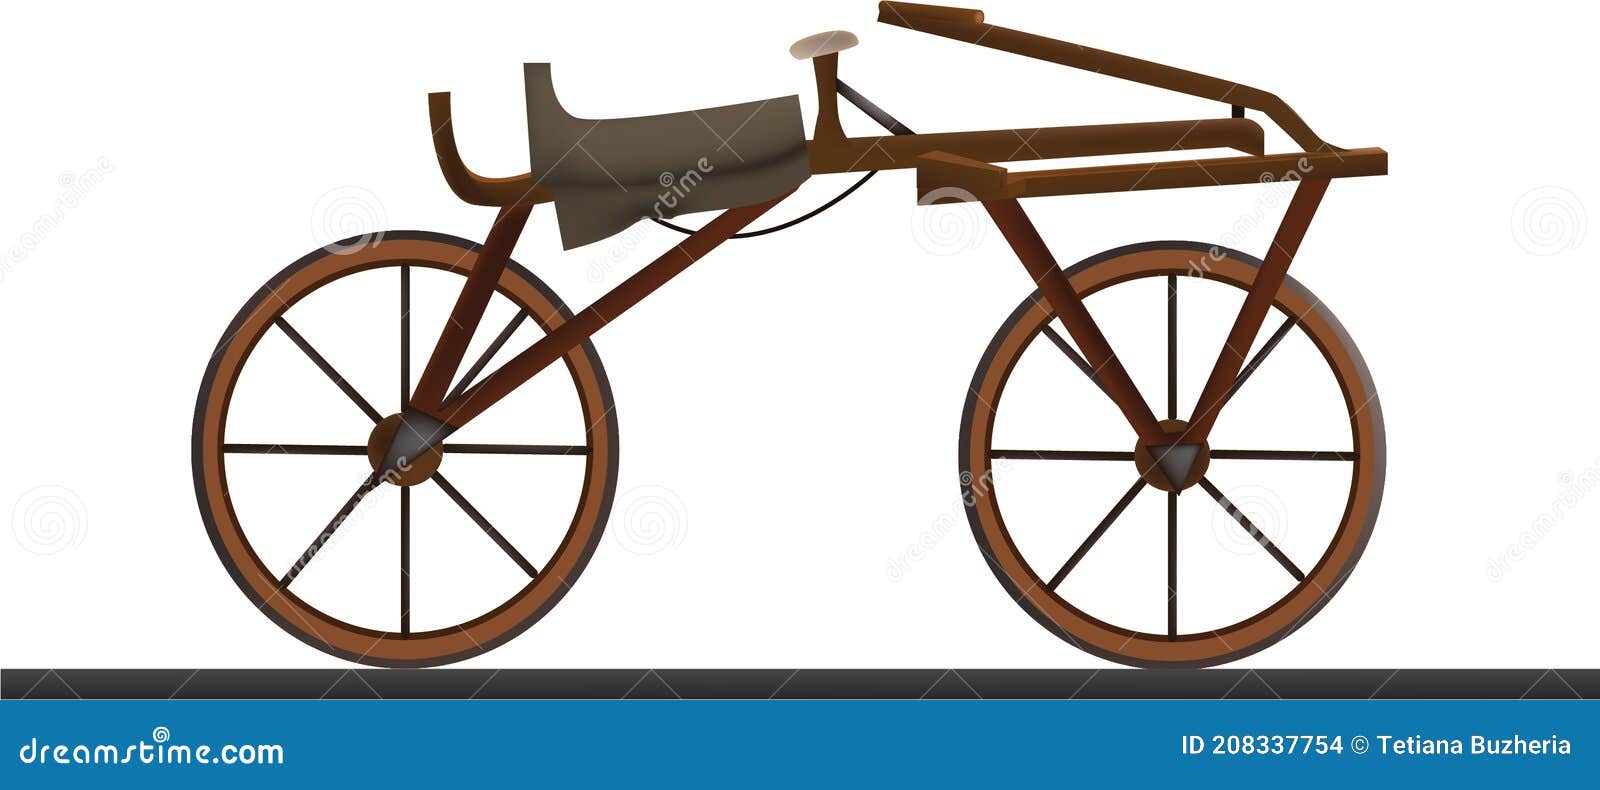 το πρώτο ποδήλατο στον κόσμο στο μηχάνημα τζόκινγκ του 1818 Διανυσματική  απεικόνιση - εικονογραφία από bicuspids: 208337754